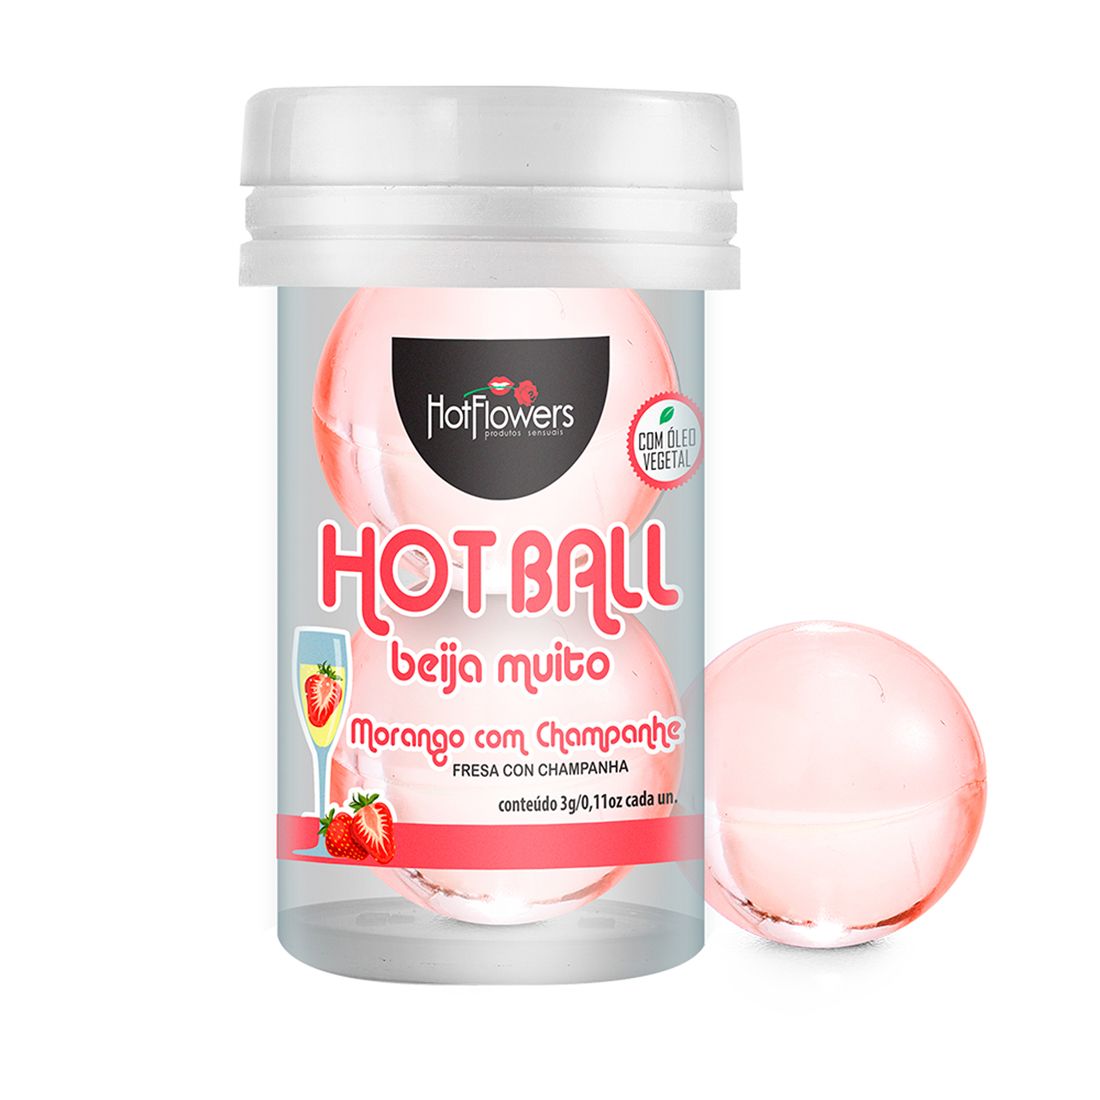     Hot Ball Beija Muito      (2   3 .)